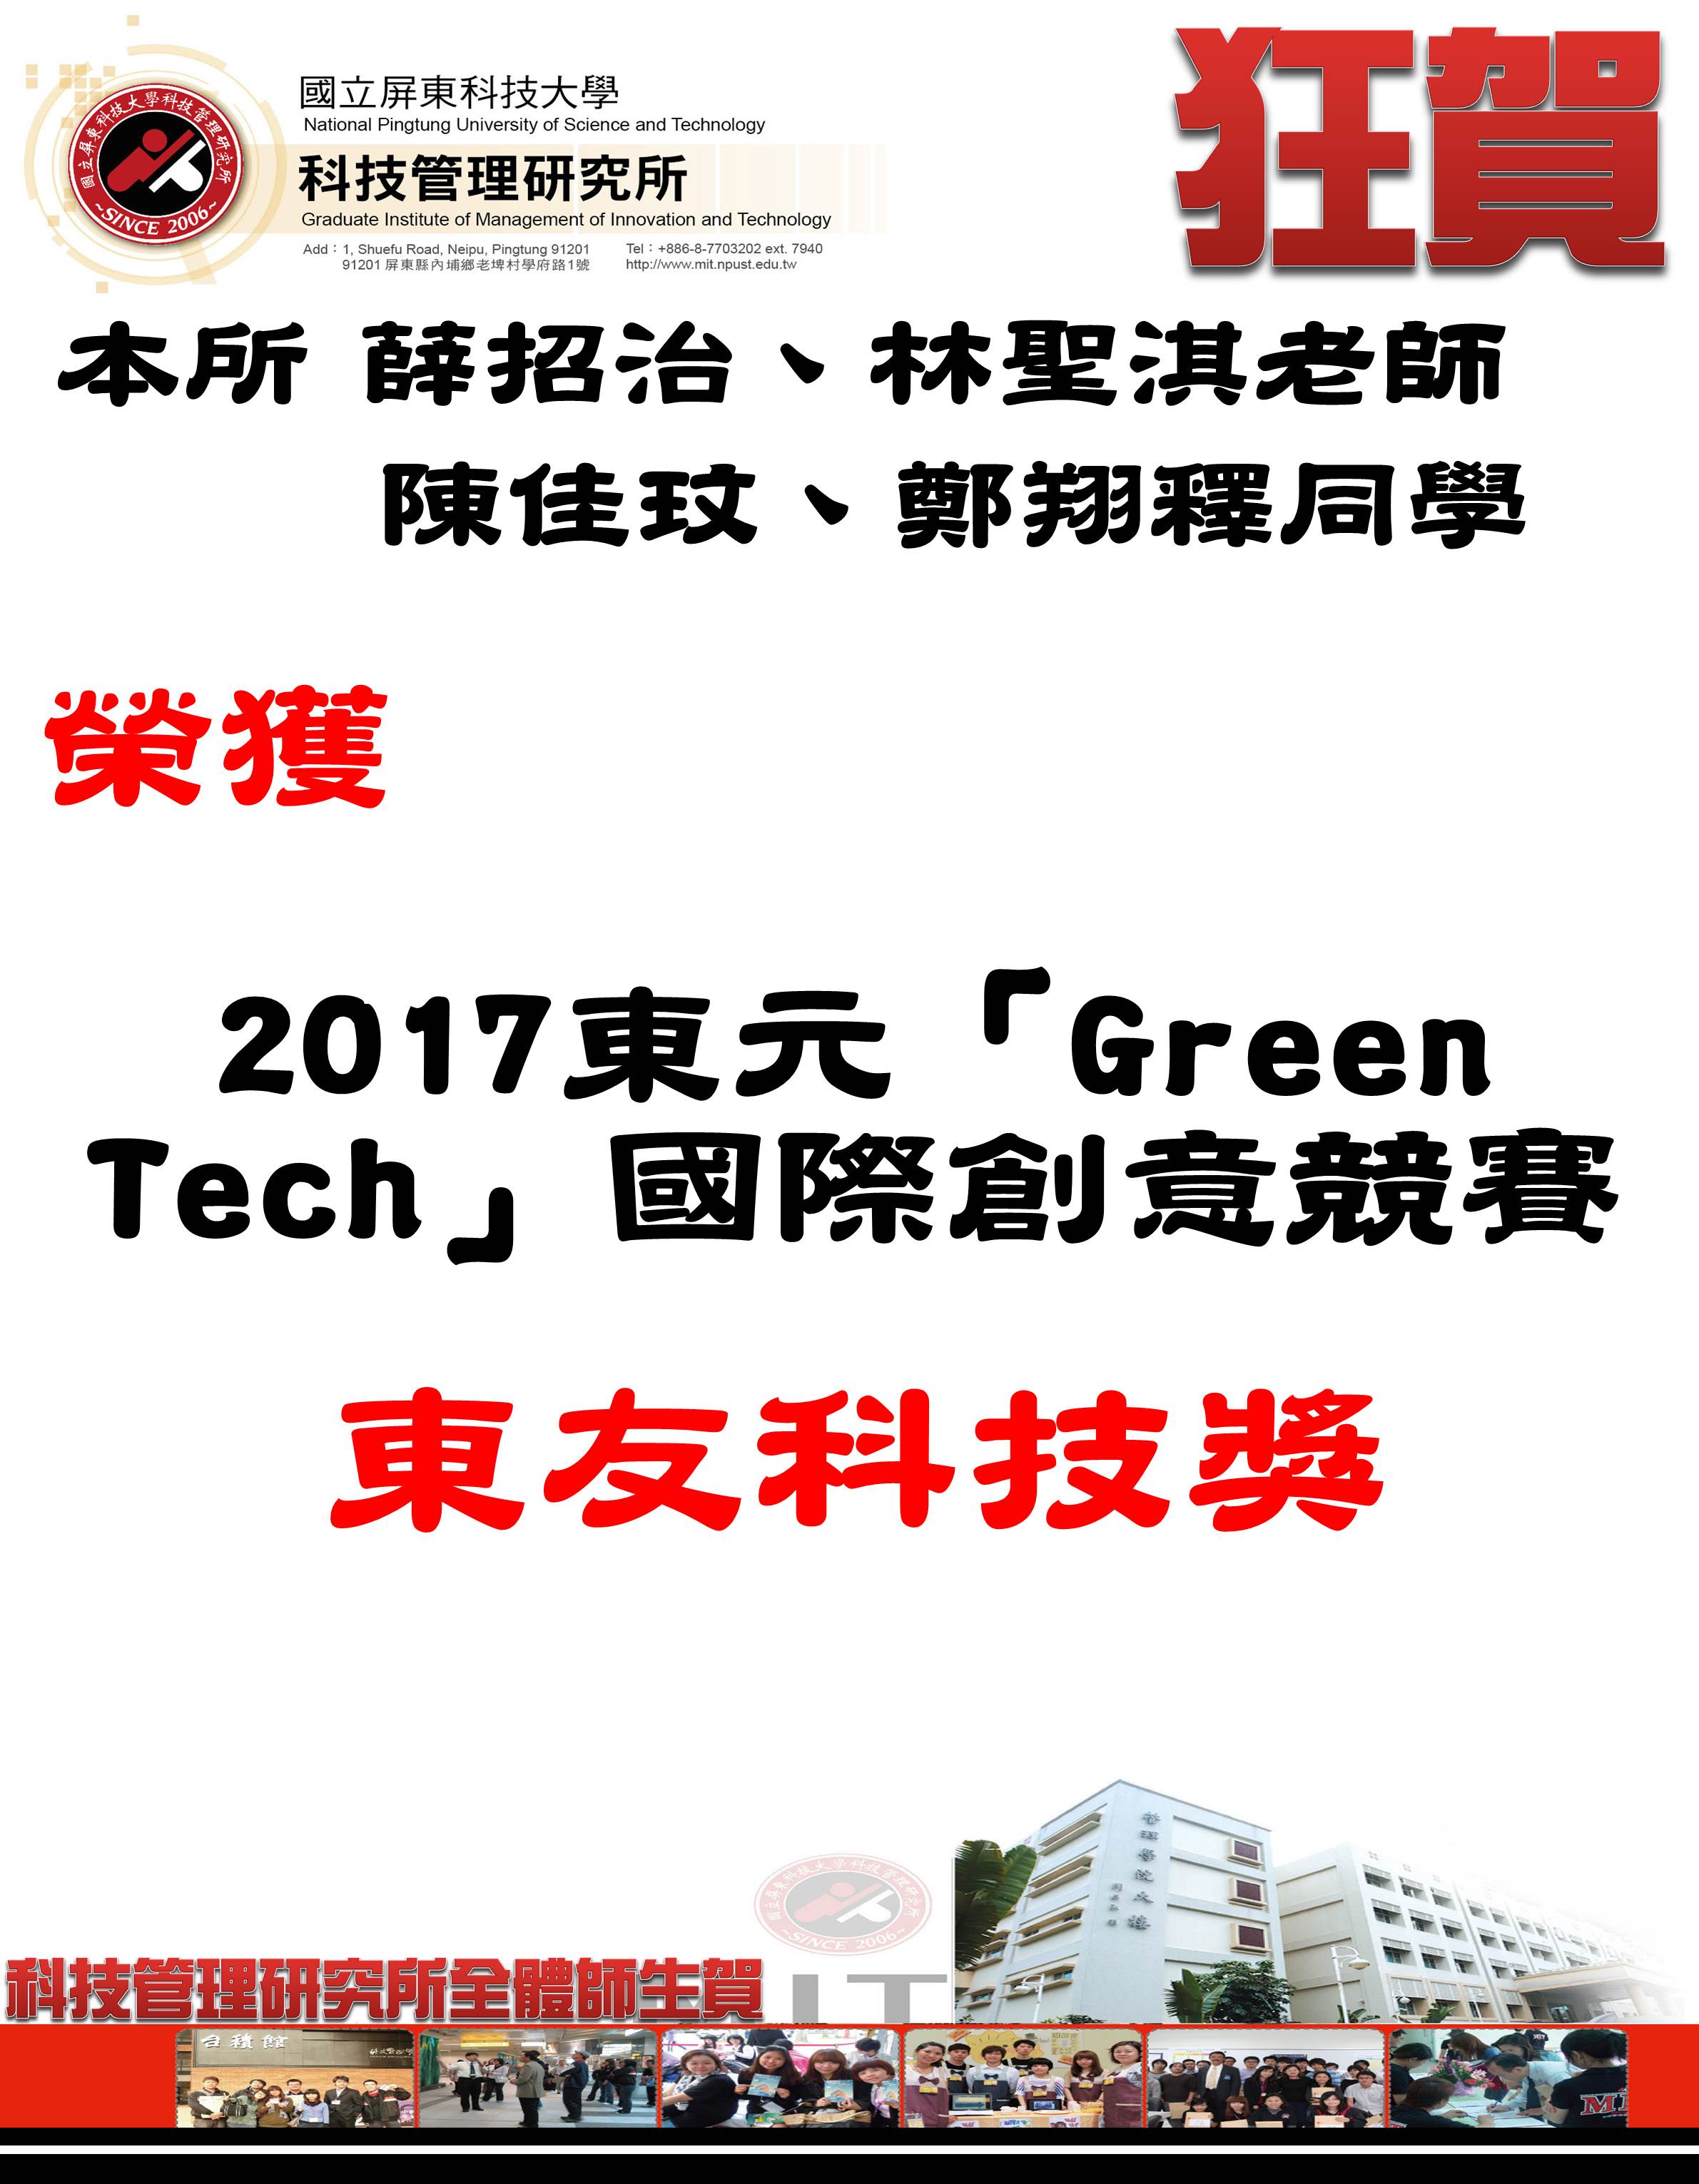 本所師生榮獲2017東元「Green Tech」國際創意競賽  東友科技獎